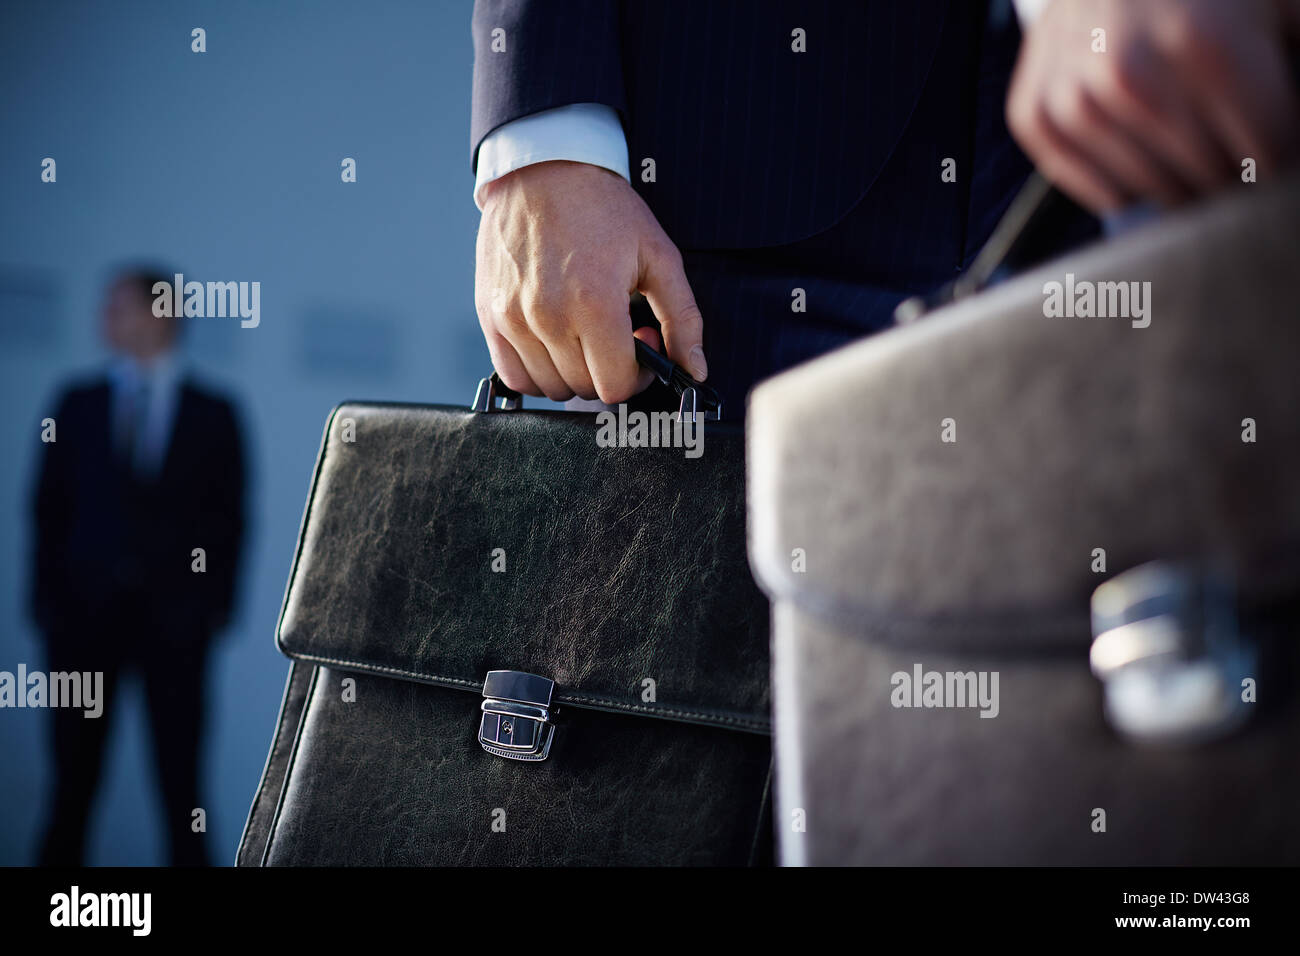 Immagine ritagliata di partner commerciali che trasportano valigette in primo piano mentre il loro collega in piedi sullo sfondo Foto Stock